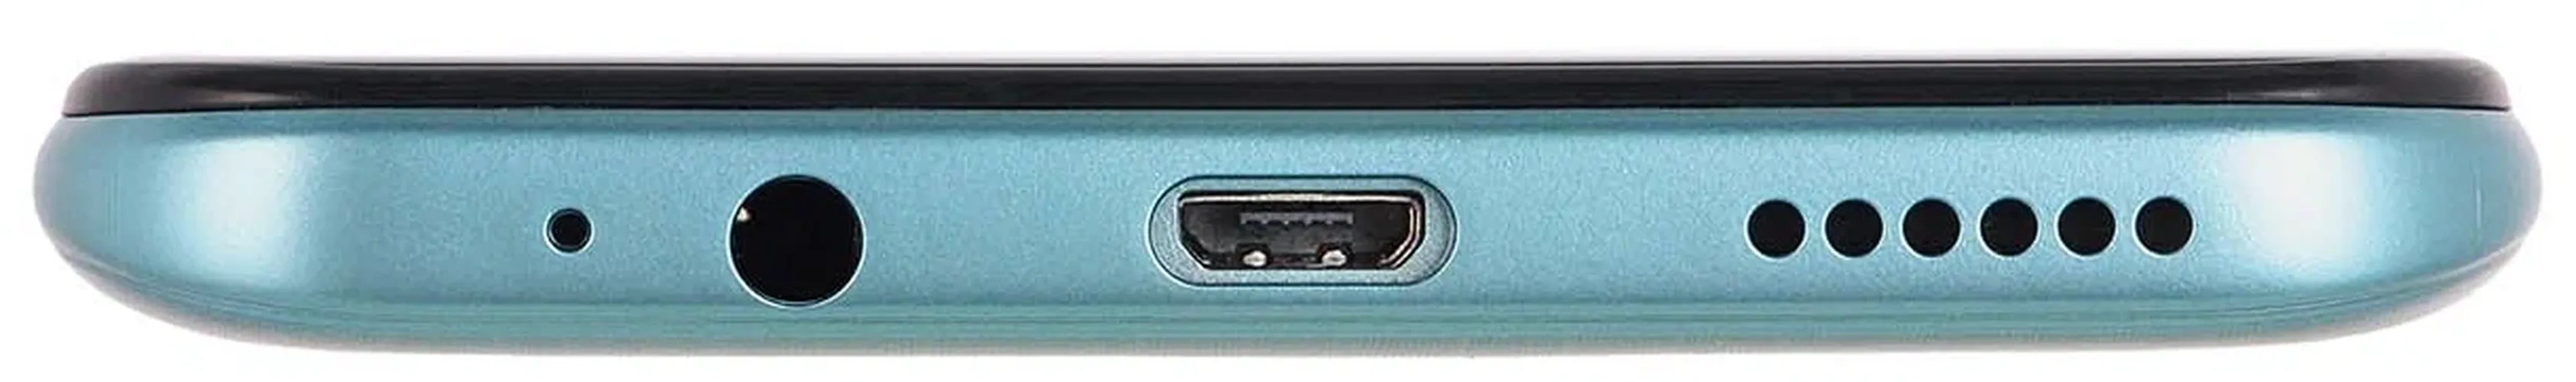 Смартфон Tecno Spark 8P, Антлантическй синий, 4/64 GB, в Узбекистане